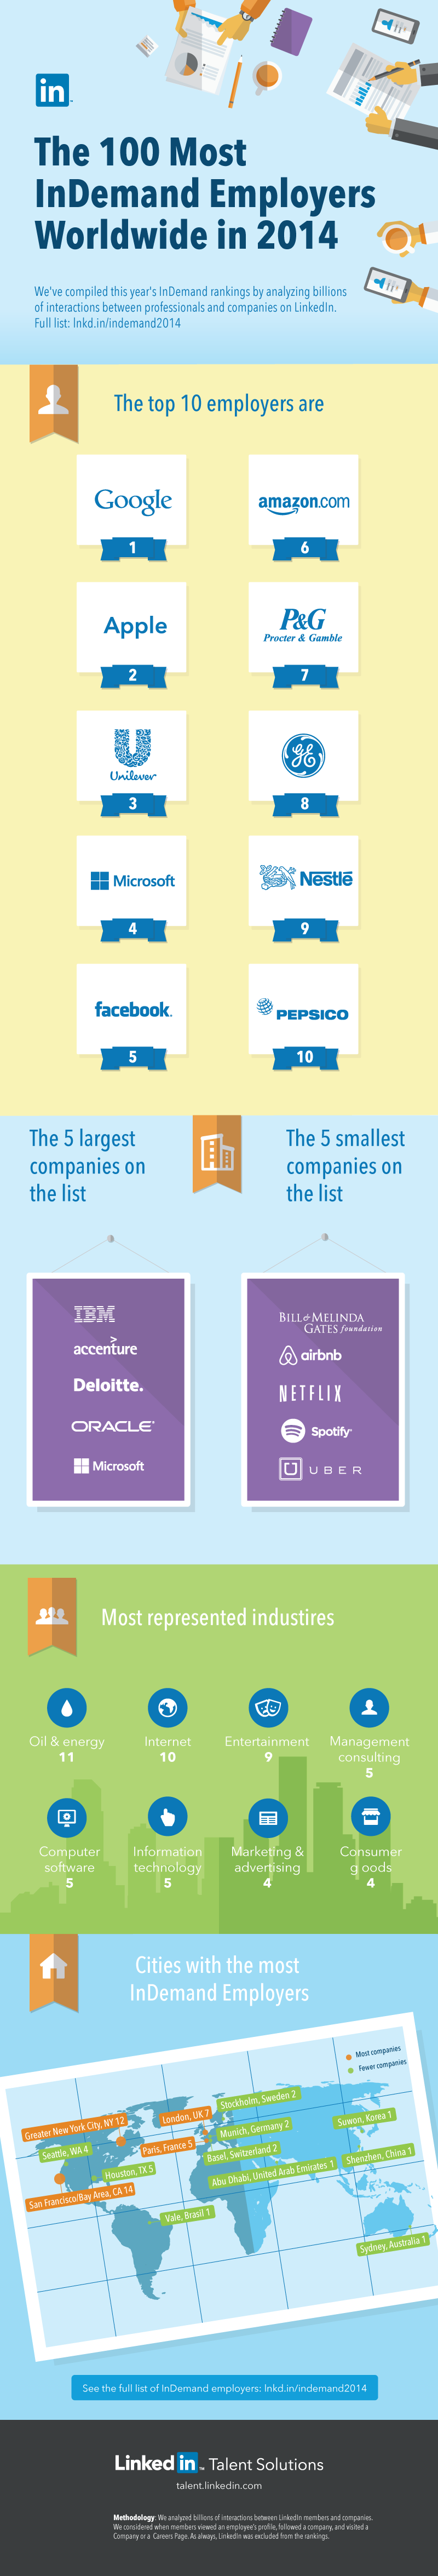 Top 100 des marques employeurs les plus attractives en 2014 sur LinkedIn